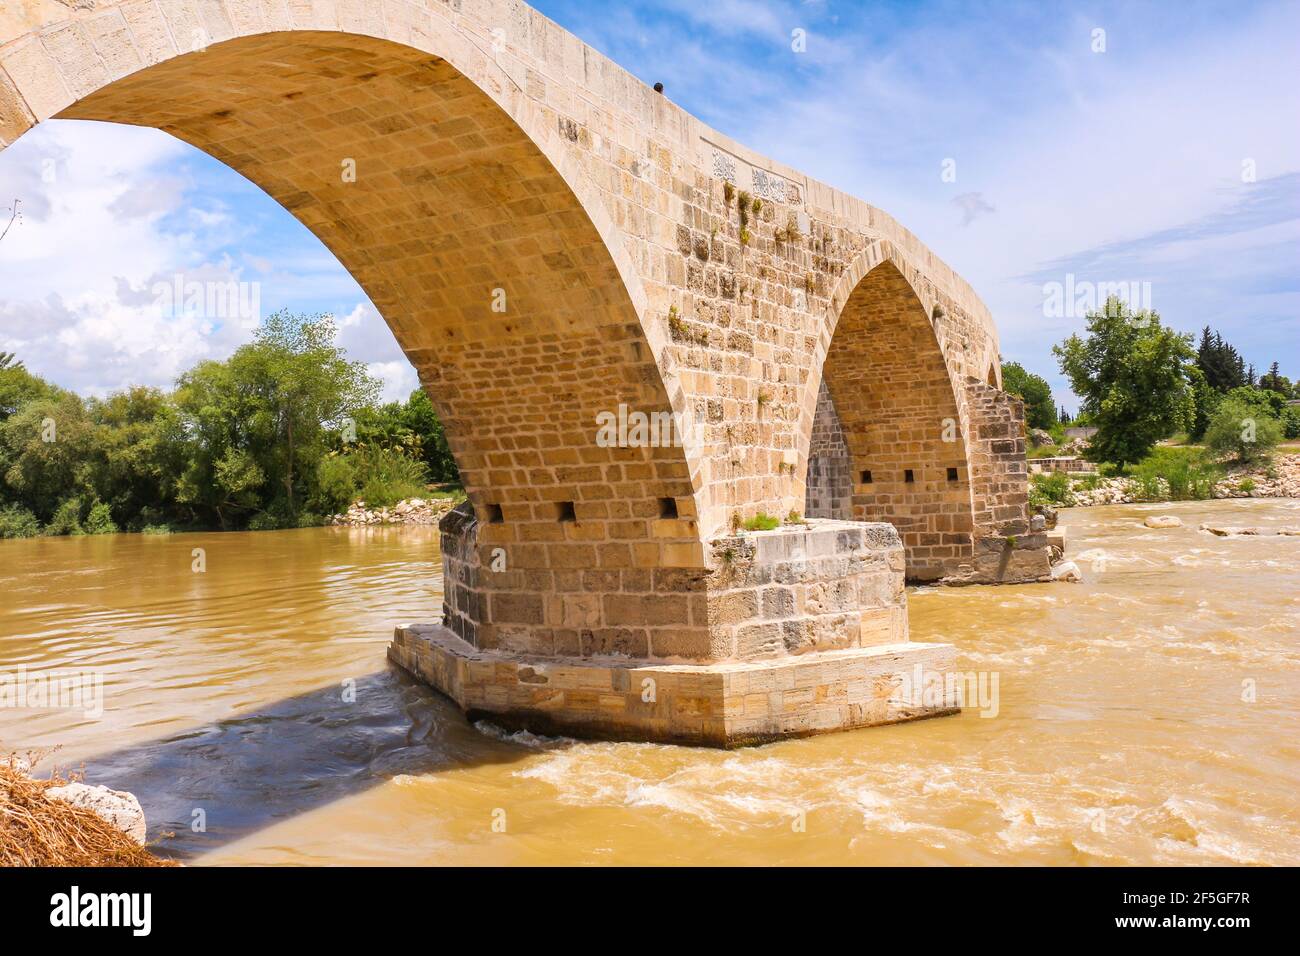 Historische Aspendos-Brücke die Eurymedon eine spätrömische Brücke über den Fluss Eurymedon, modernes Köprüçay, in der Nähe von Aspendos, in Pamphylien in Südanatolien. Stockfoto